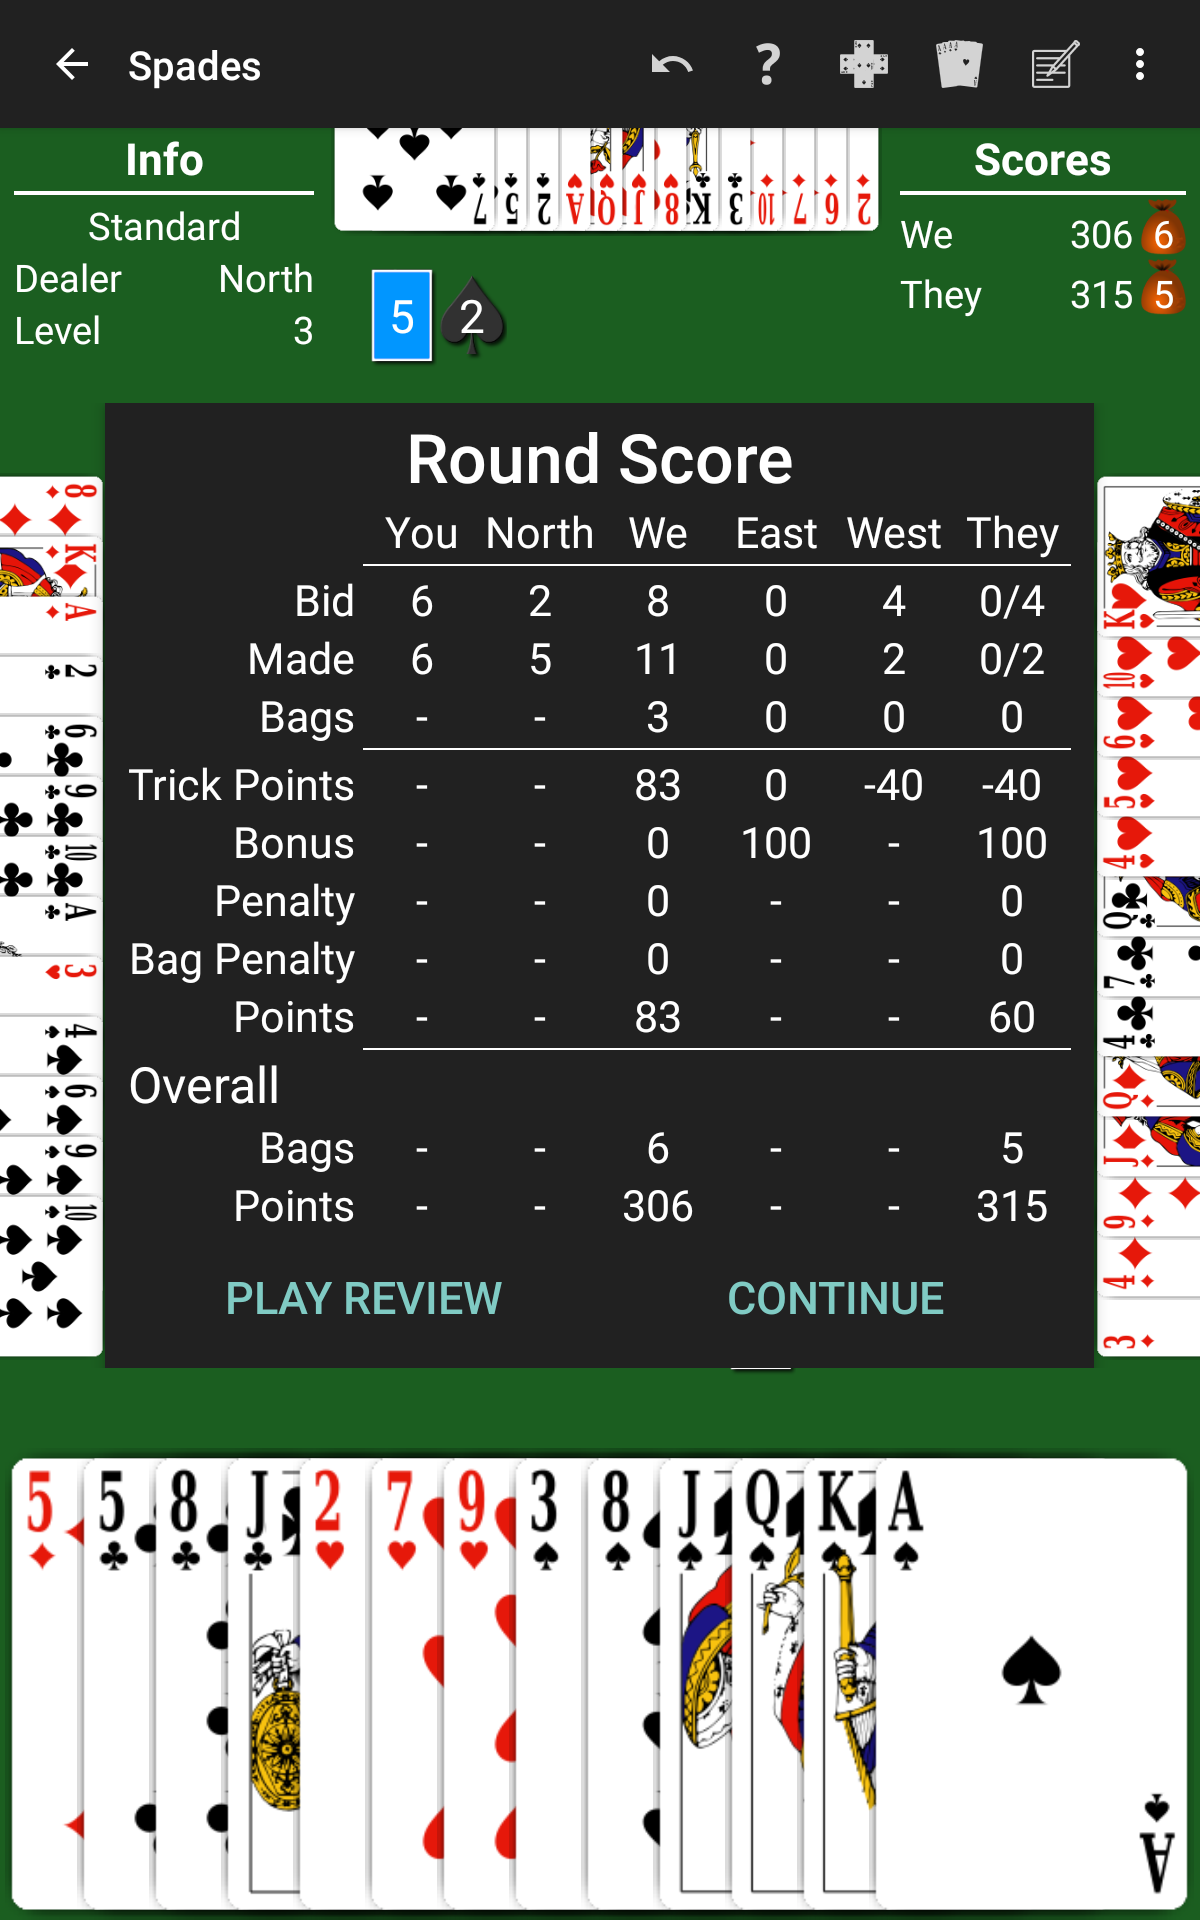 Spades show round score details